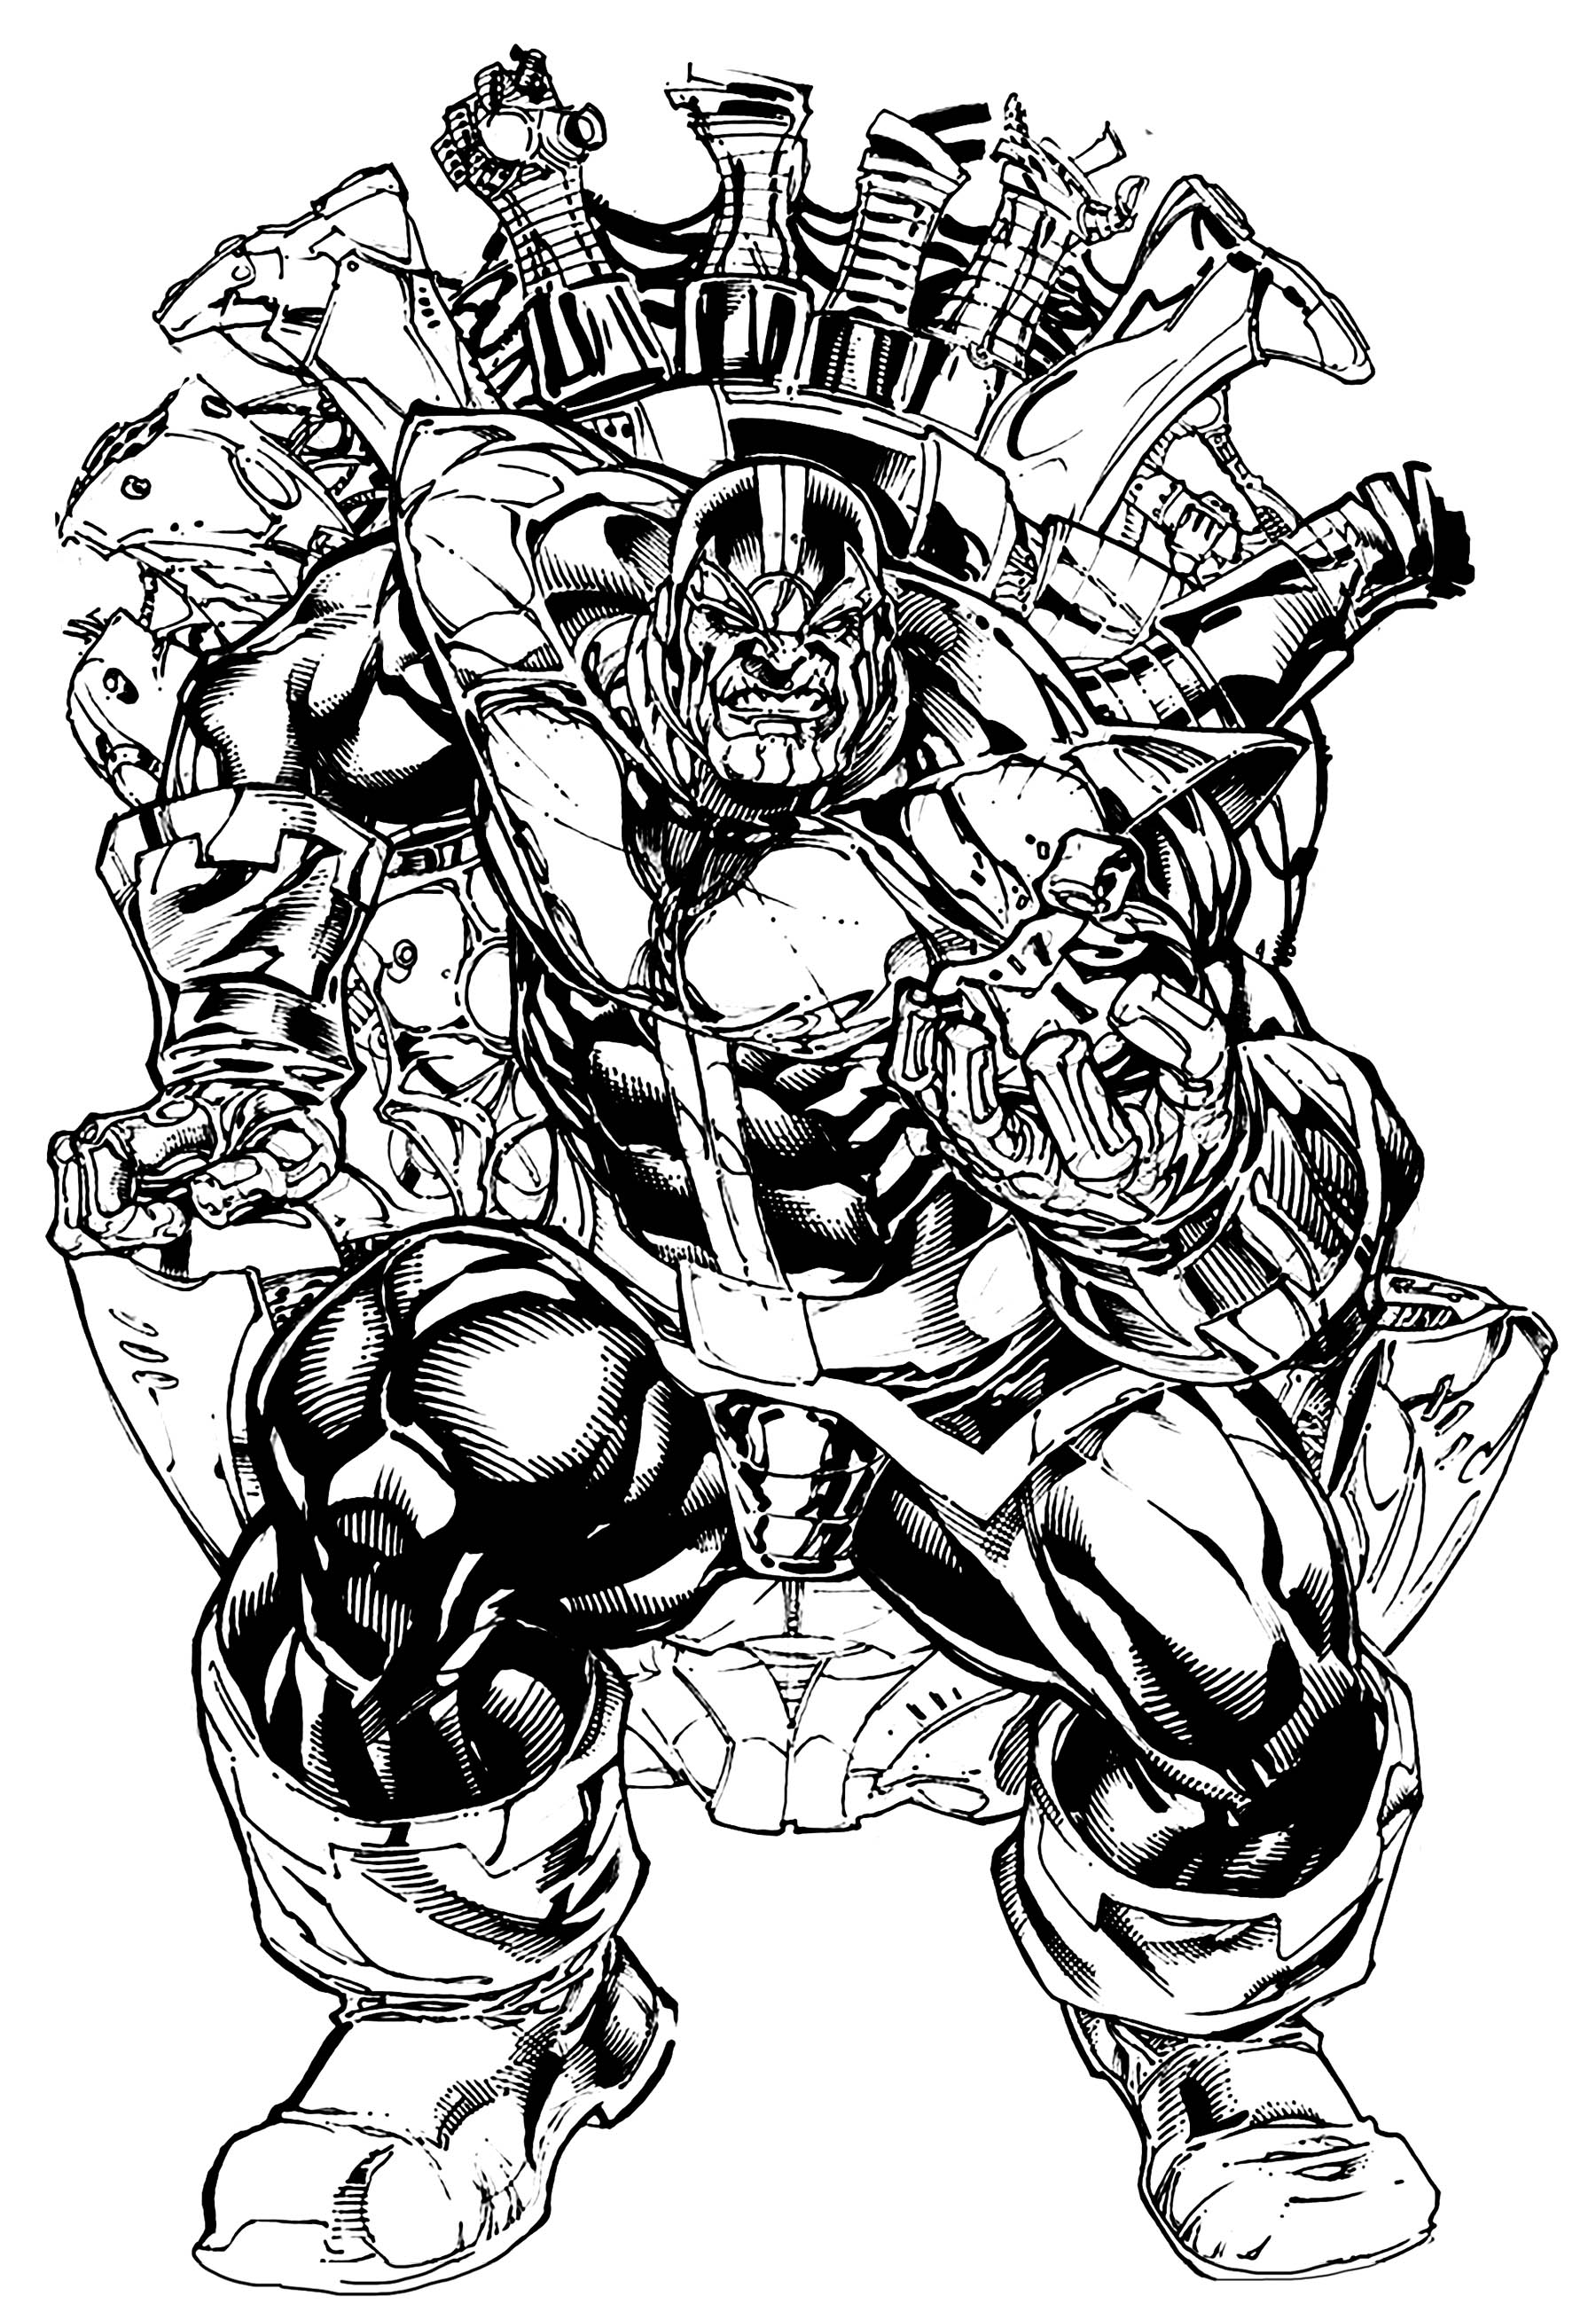 Thanos, le super-vilain ultime évoluant dans l'univers Marvel. Coloriage inspiré d'un dessin 'fan-art' de Kevin Sharpe